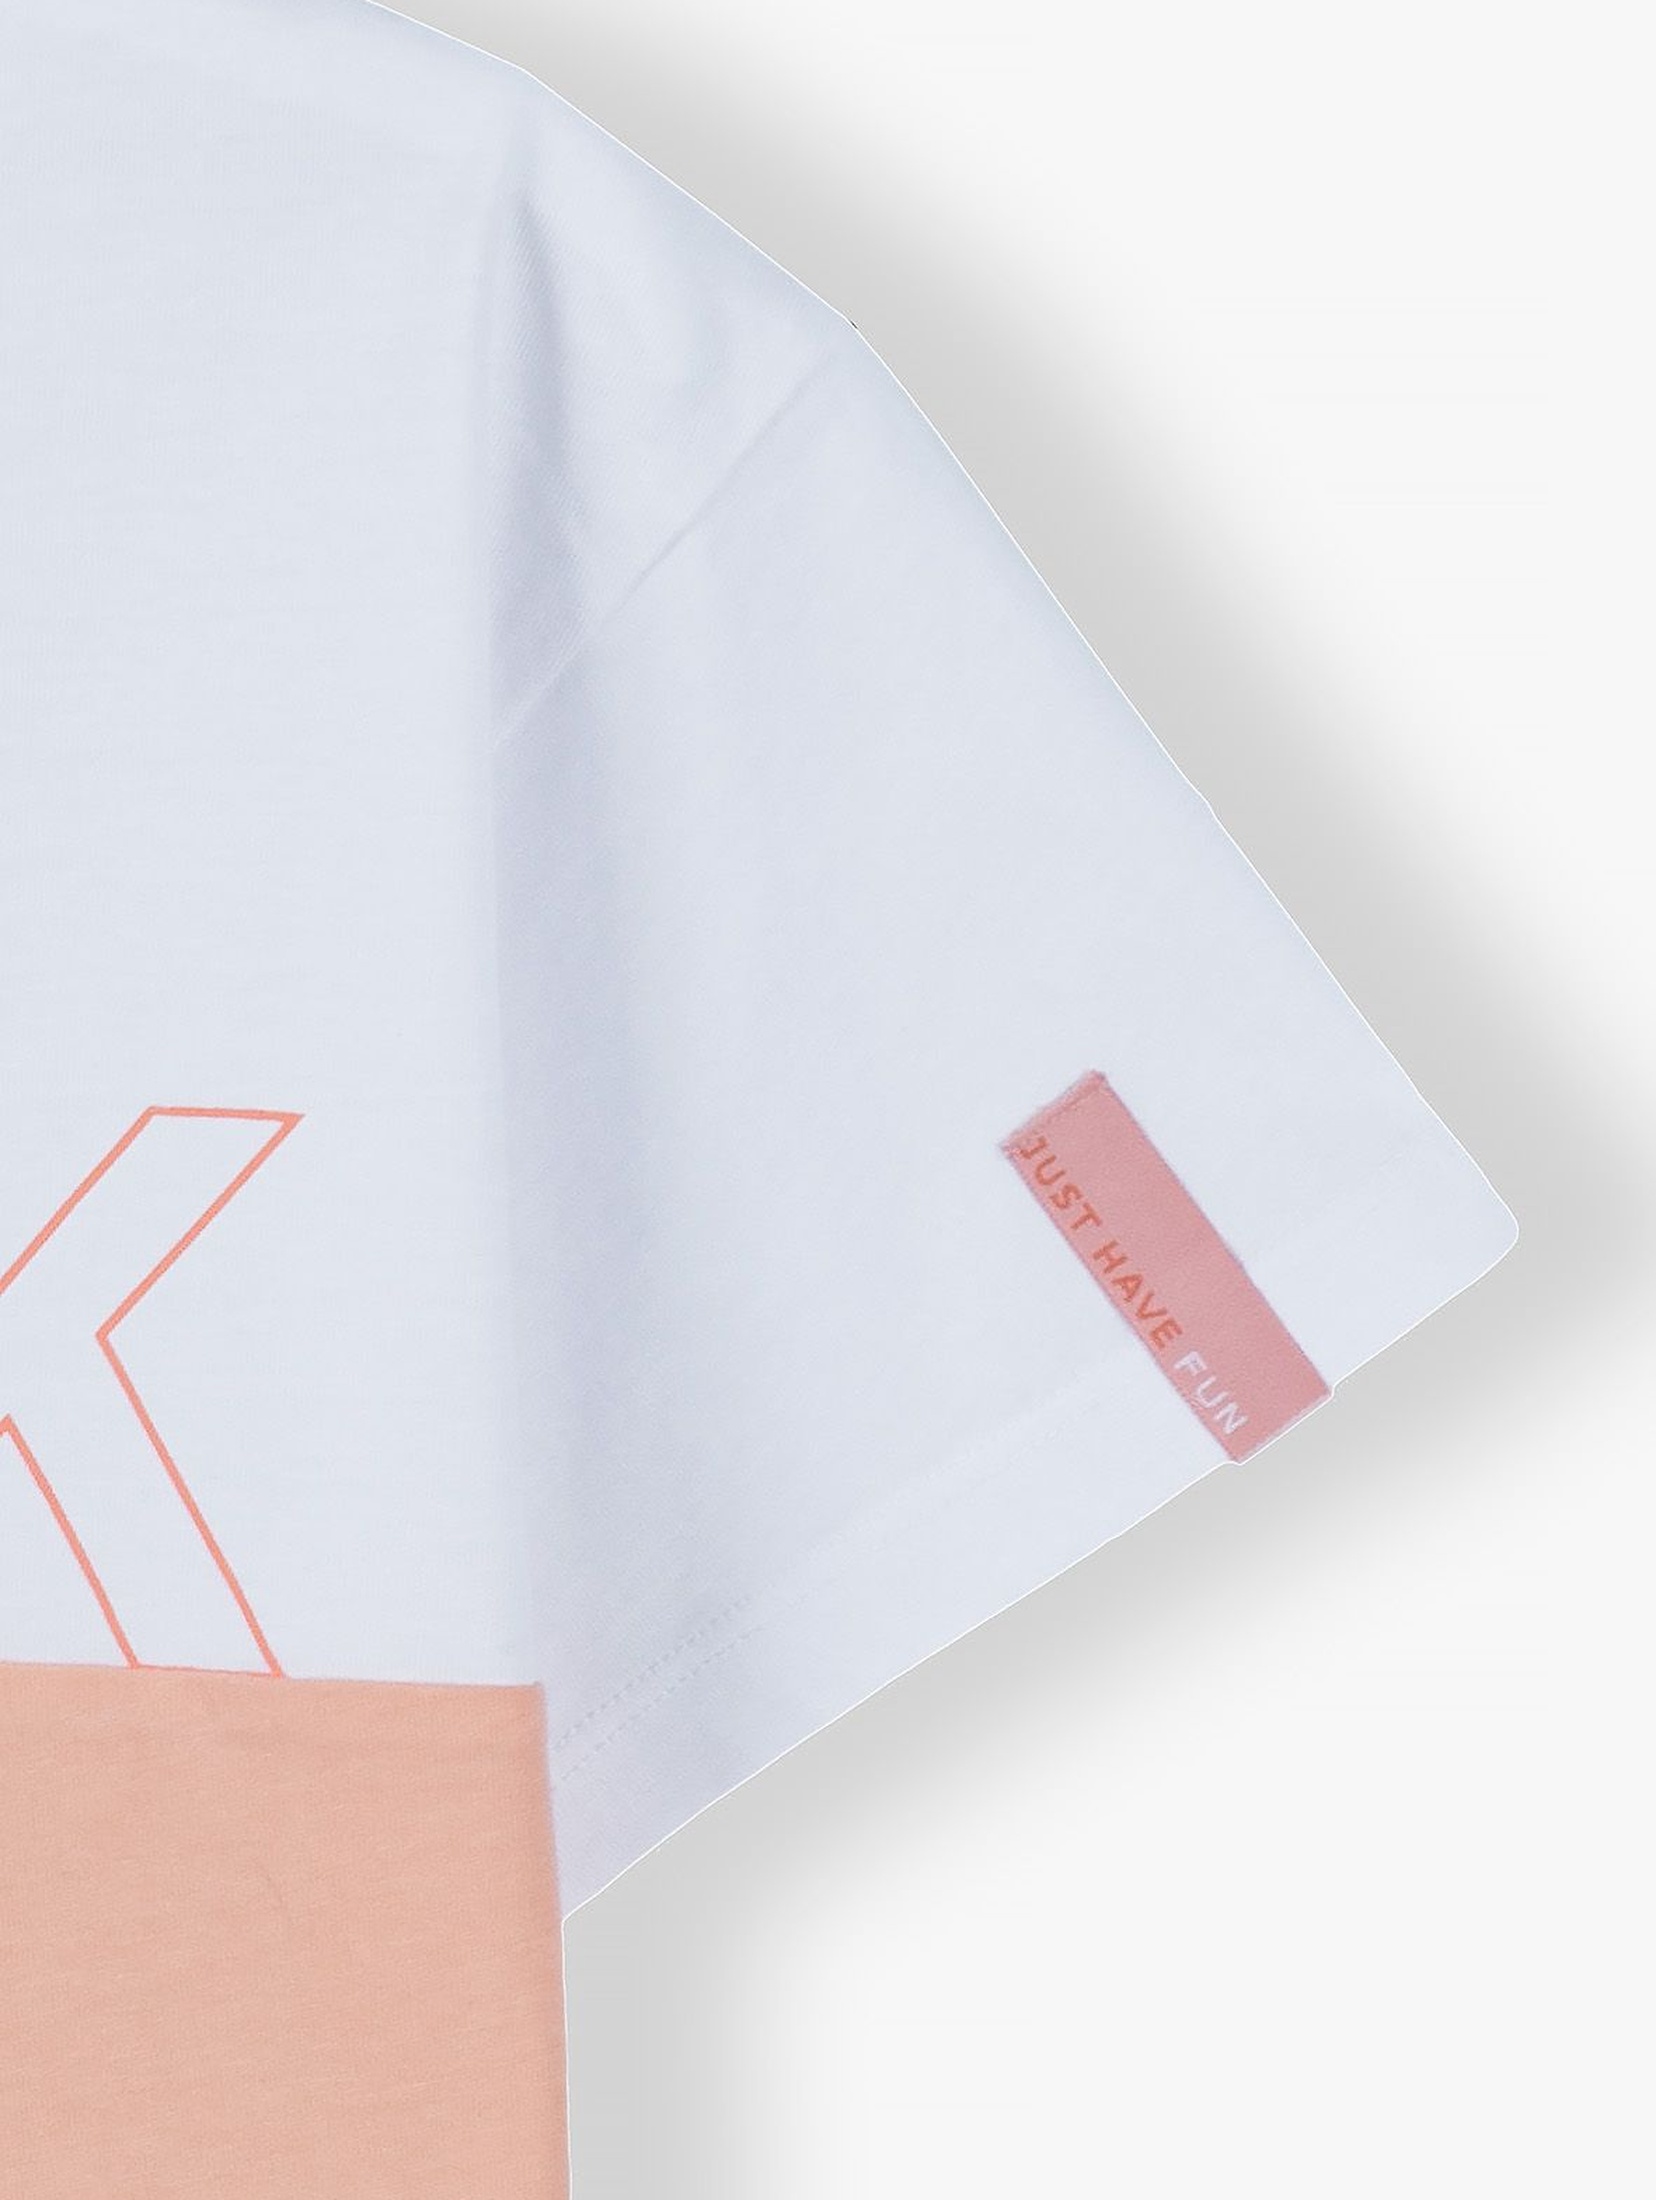 Bawełniany  T- shirt dziewczęcy z napisem Think- biało - różowy